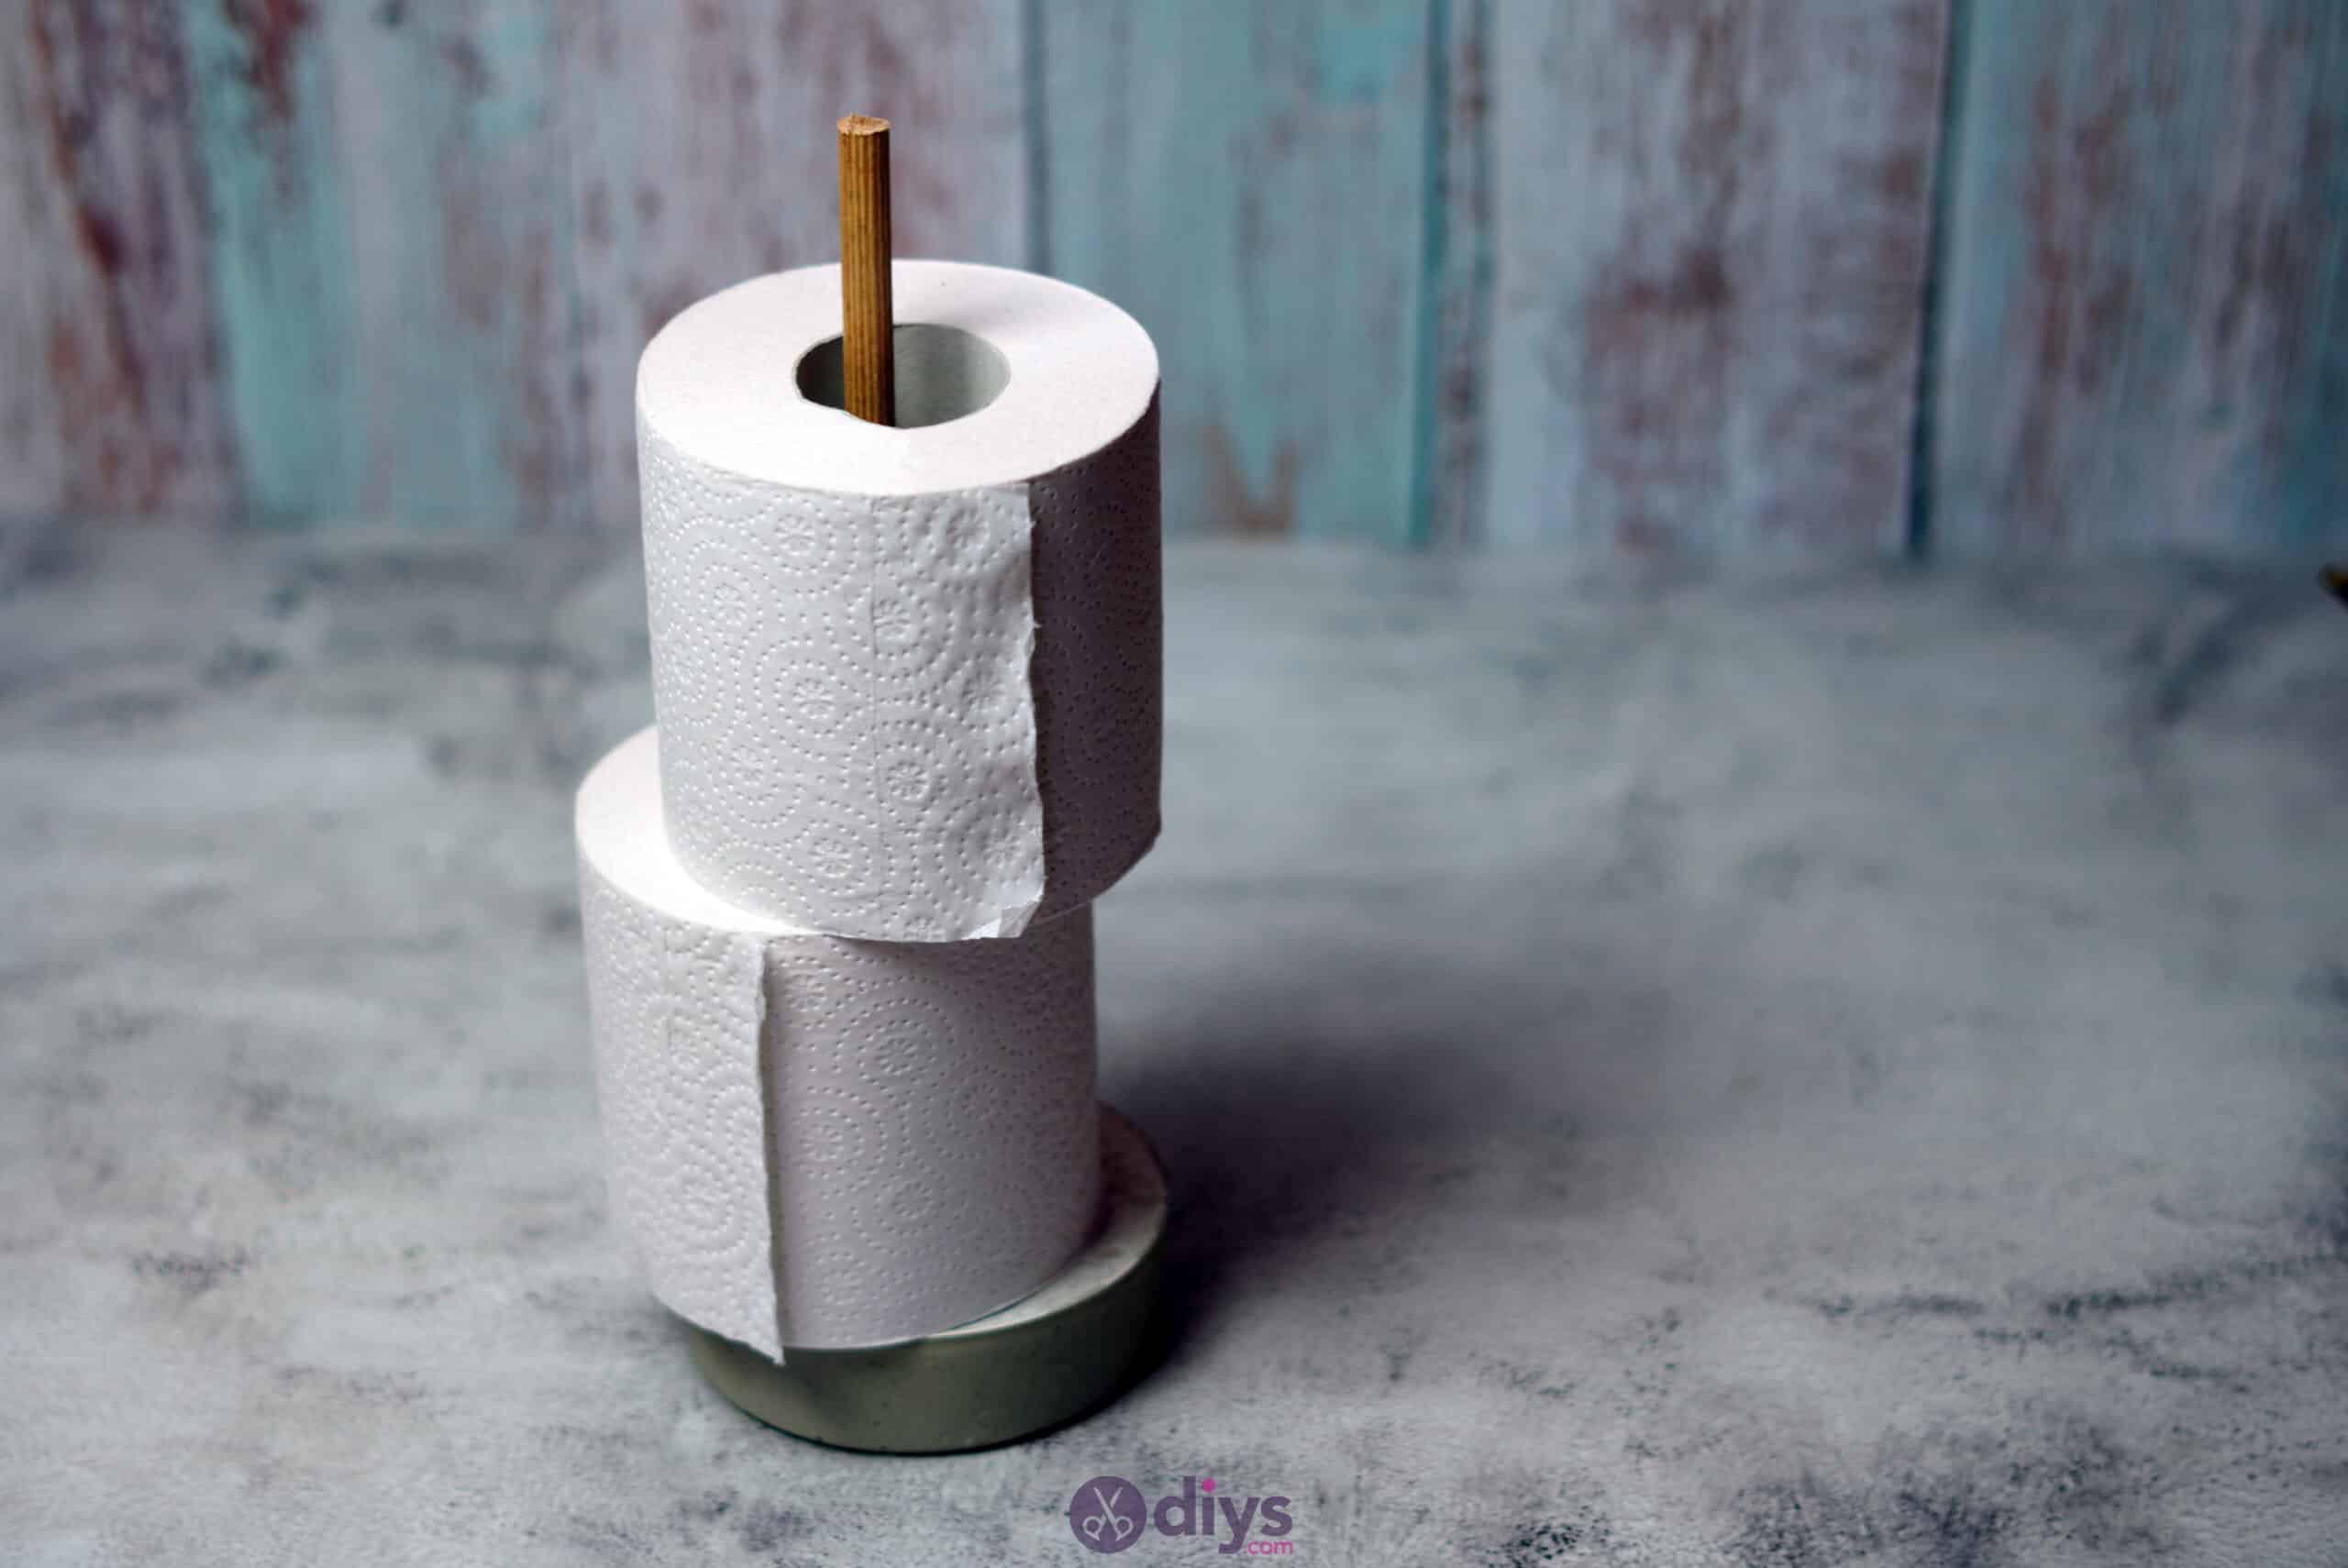 Concrete toilet paper holder top